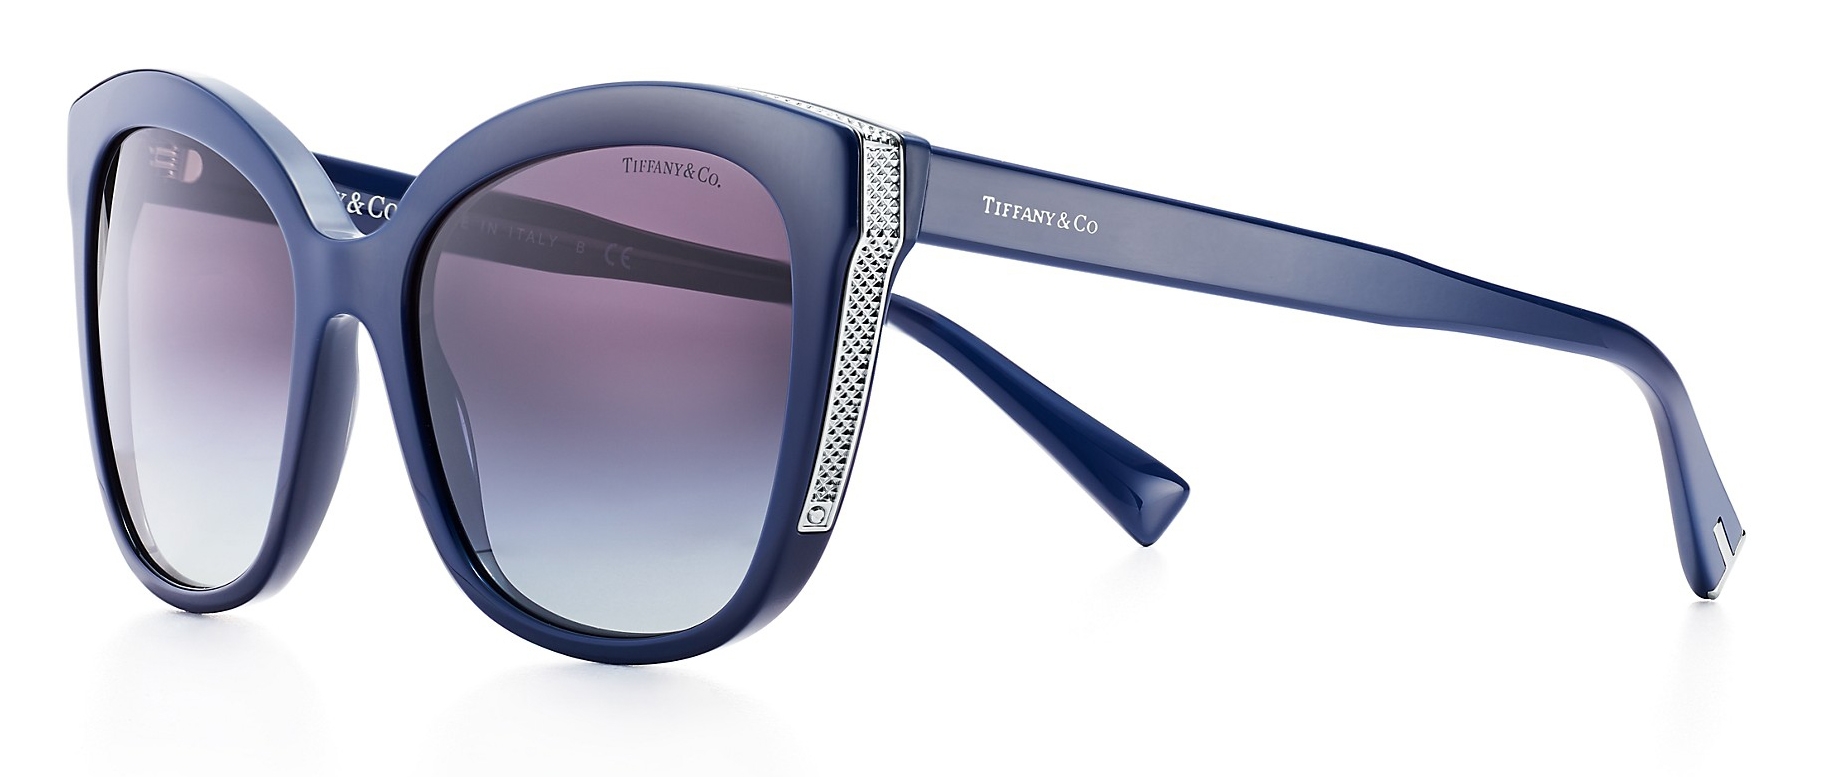 tiffany square sunglasses